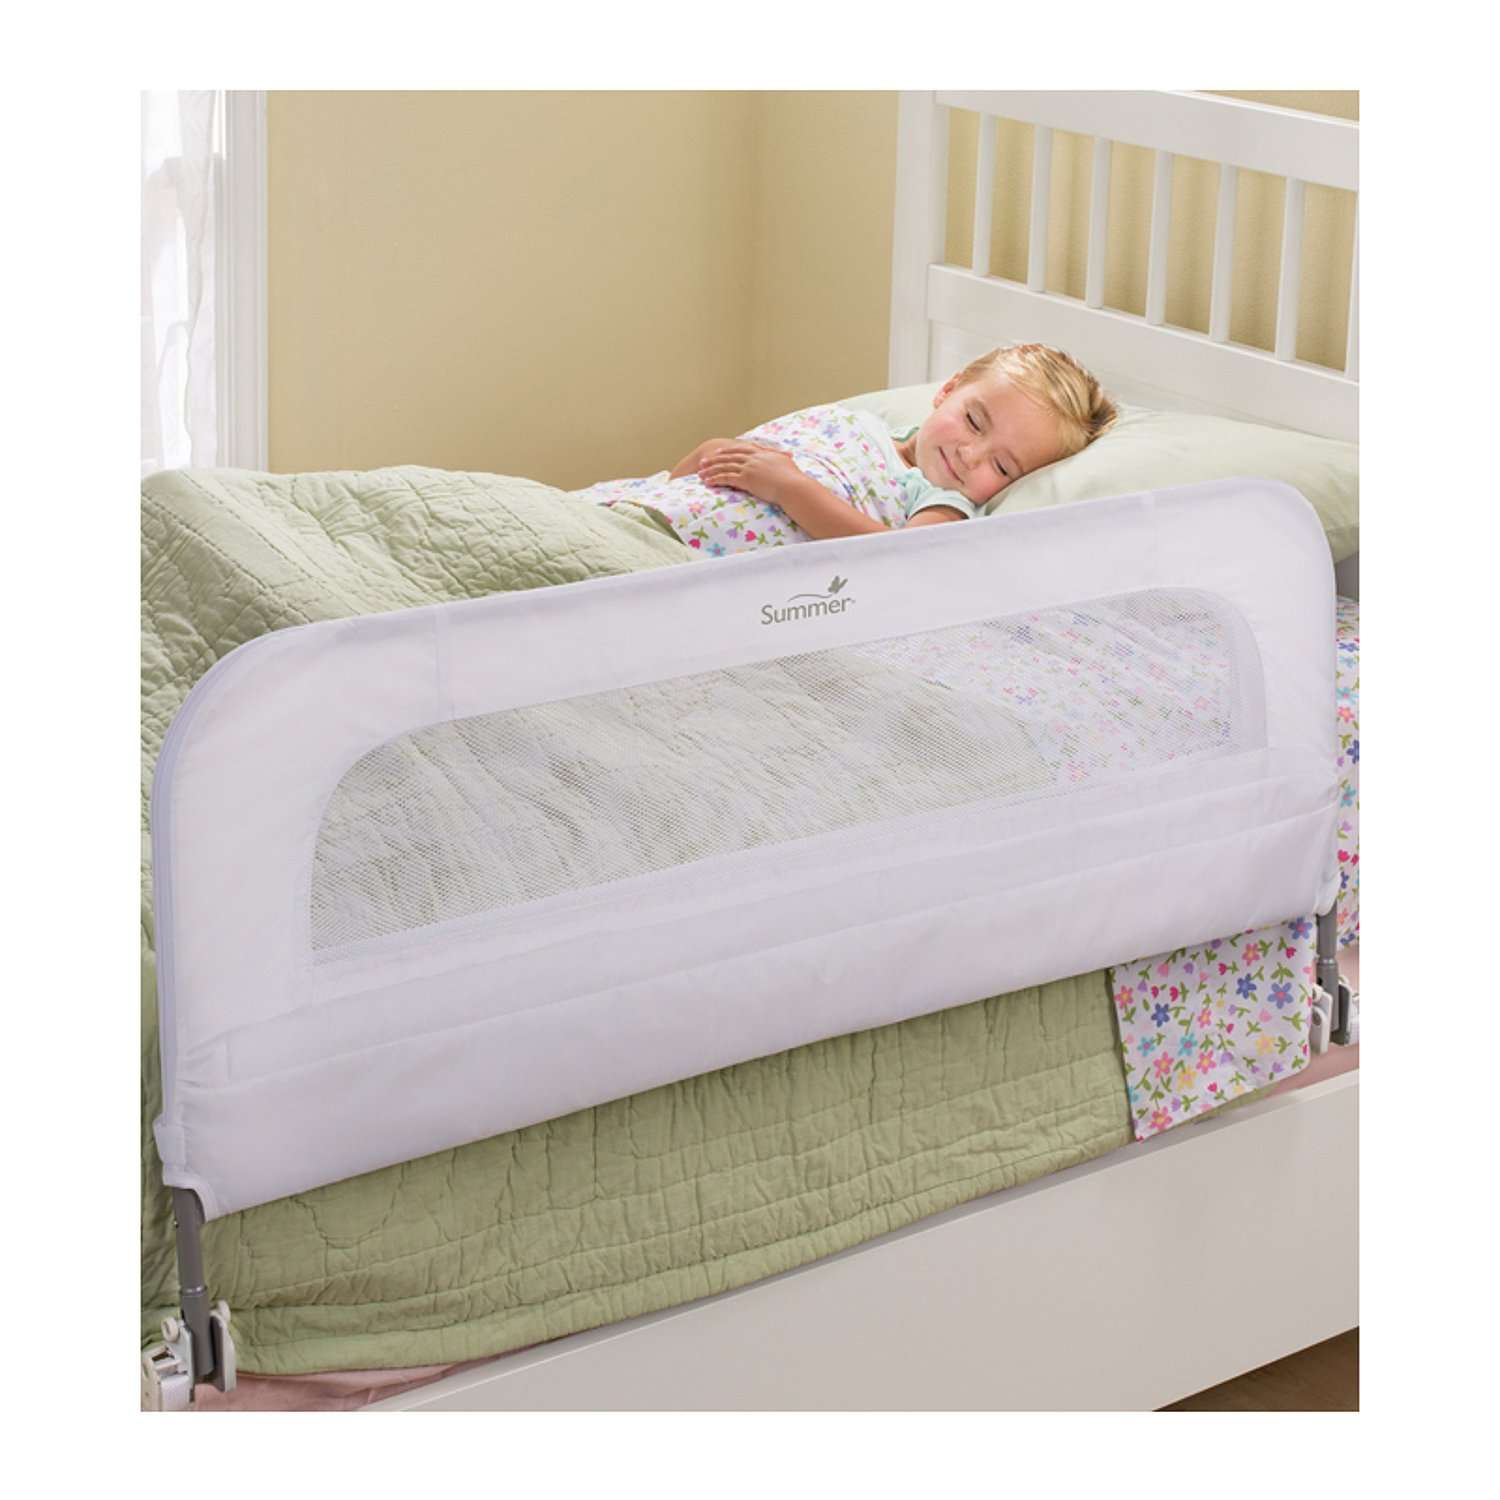 Ограничитель для кровати Summer Infant универсальный Single Fold Bedrail белый - фото 2